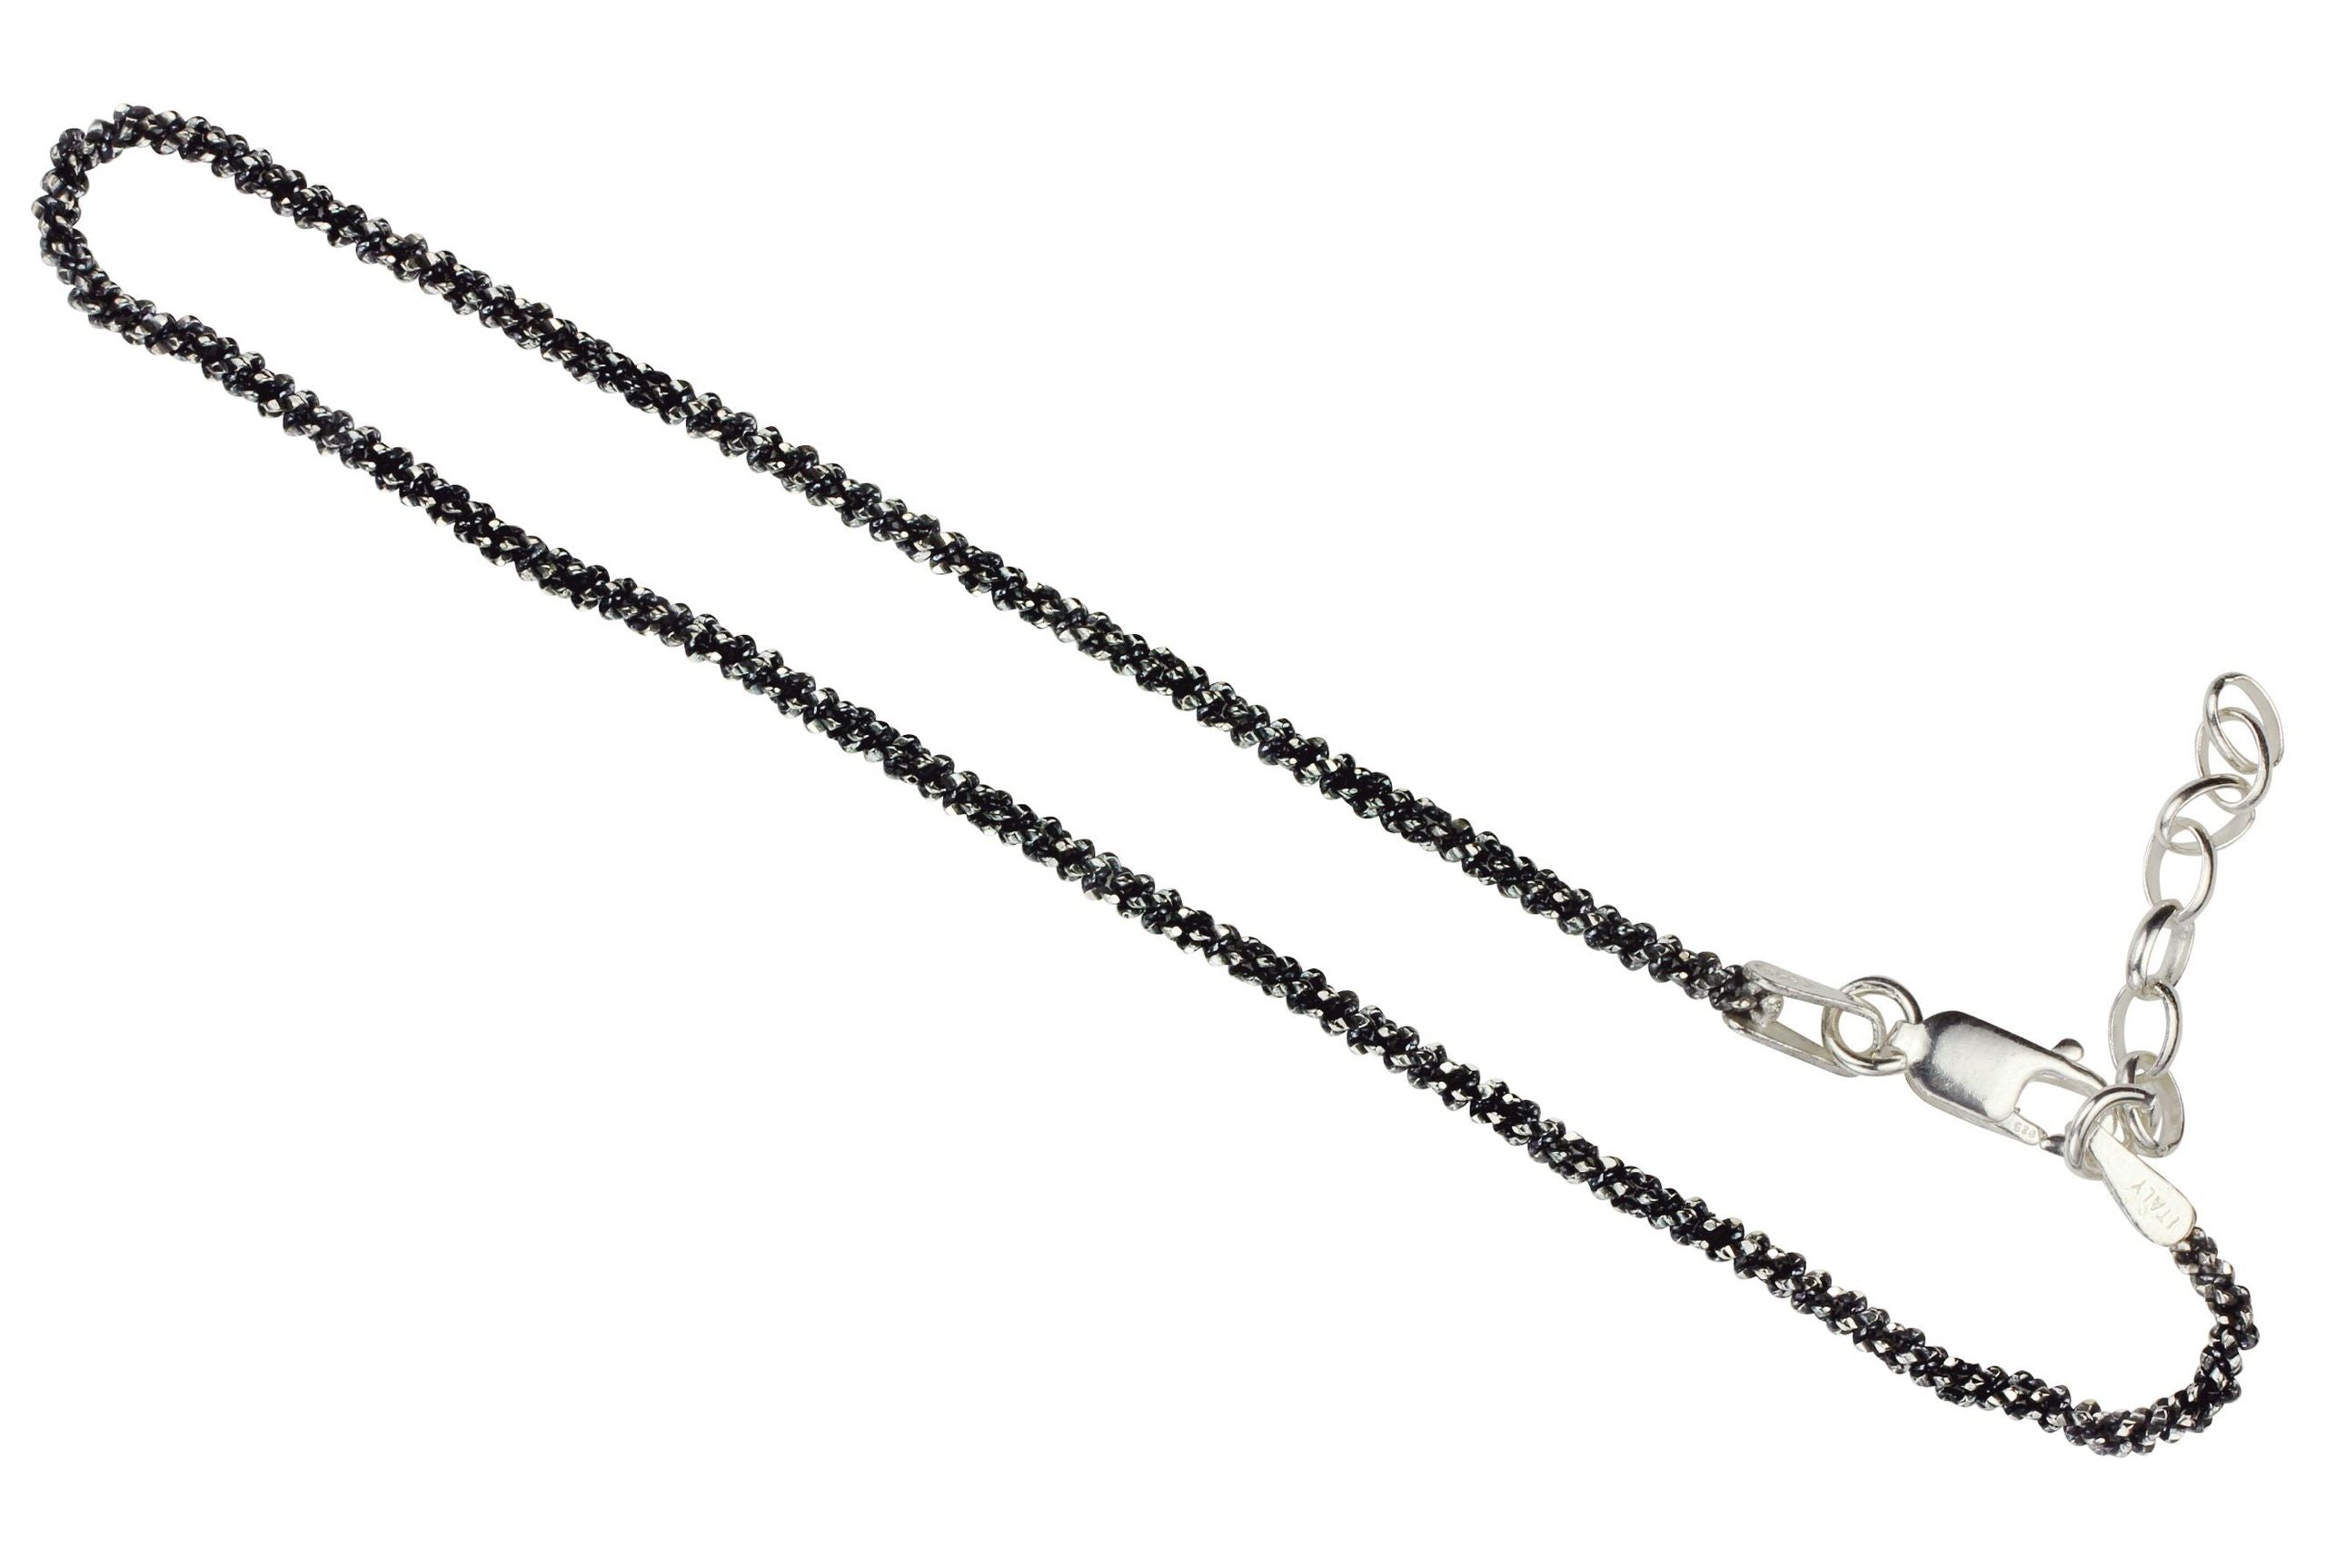 Geschwärztes Criss-Cross-Armband aus Silber für Damen mit einem geschmeidigen Geflecht und einer angeschliffenen funkelnden Oberfläche.